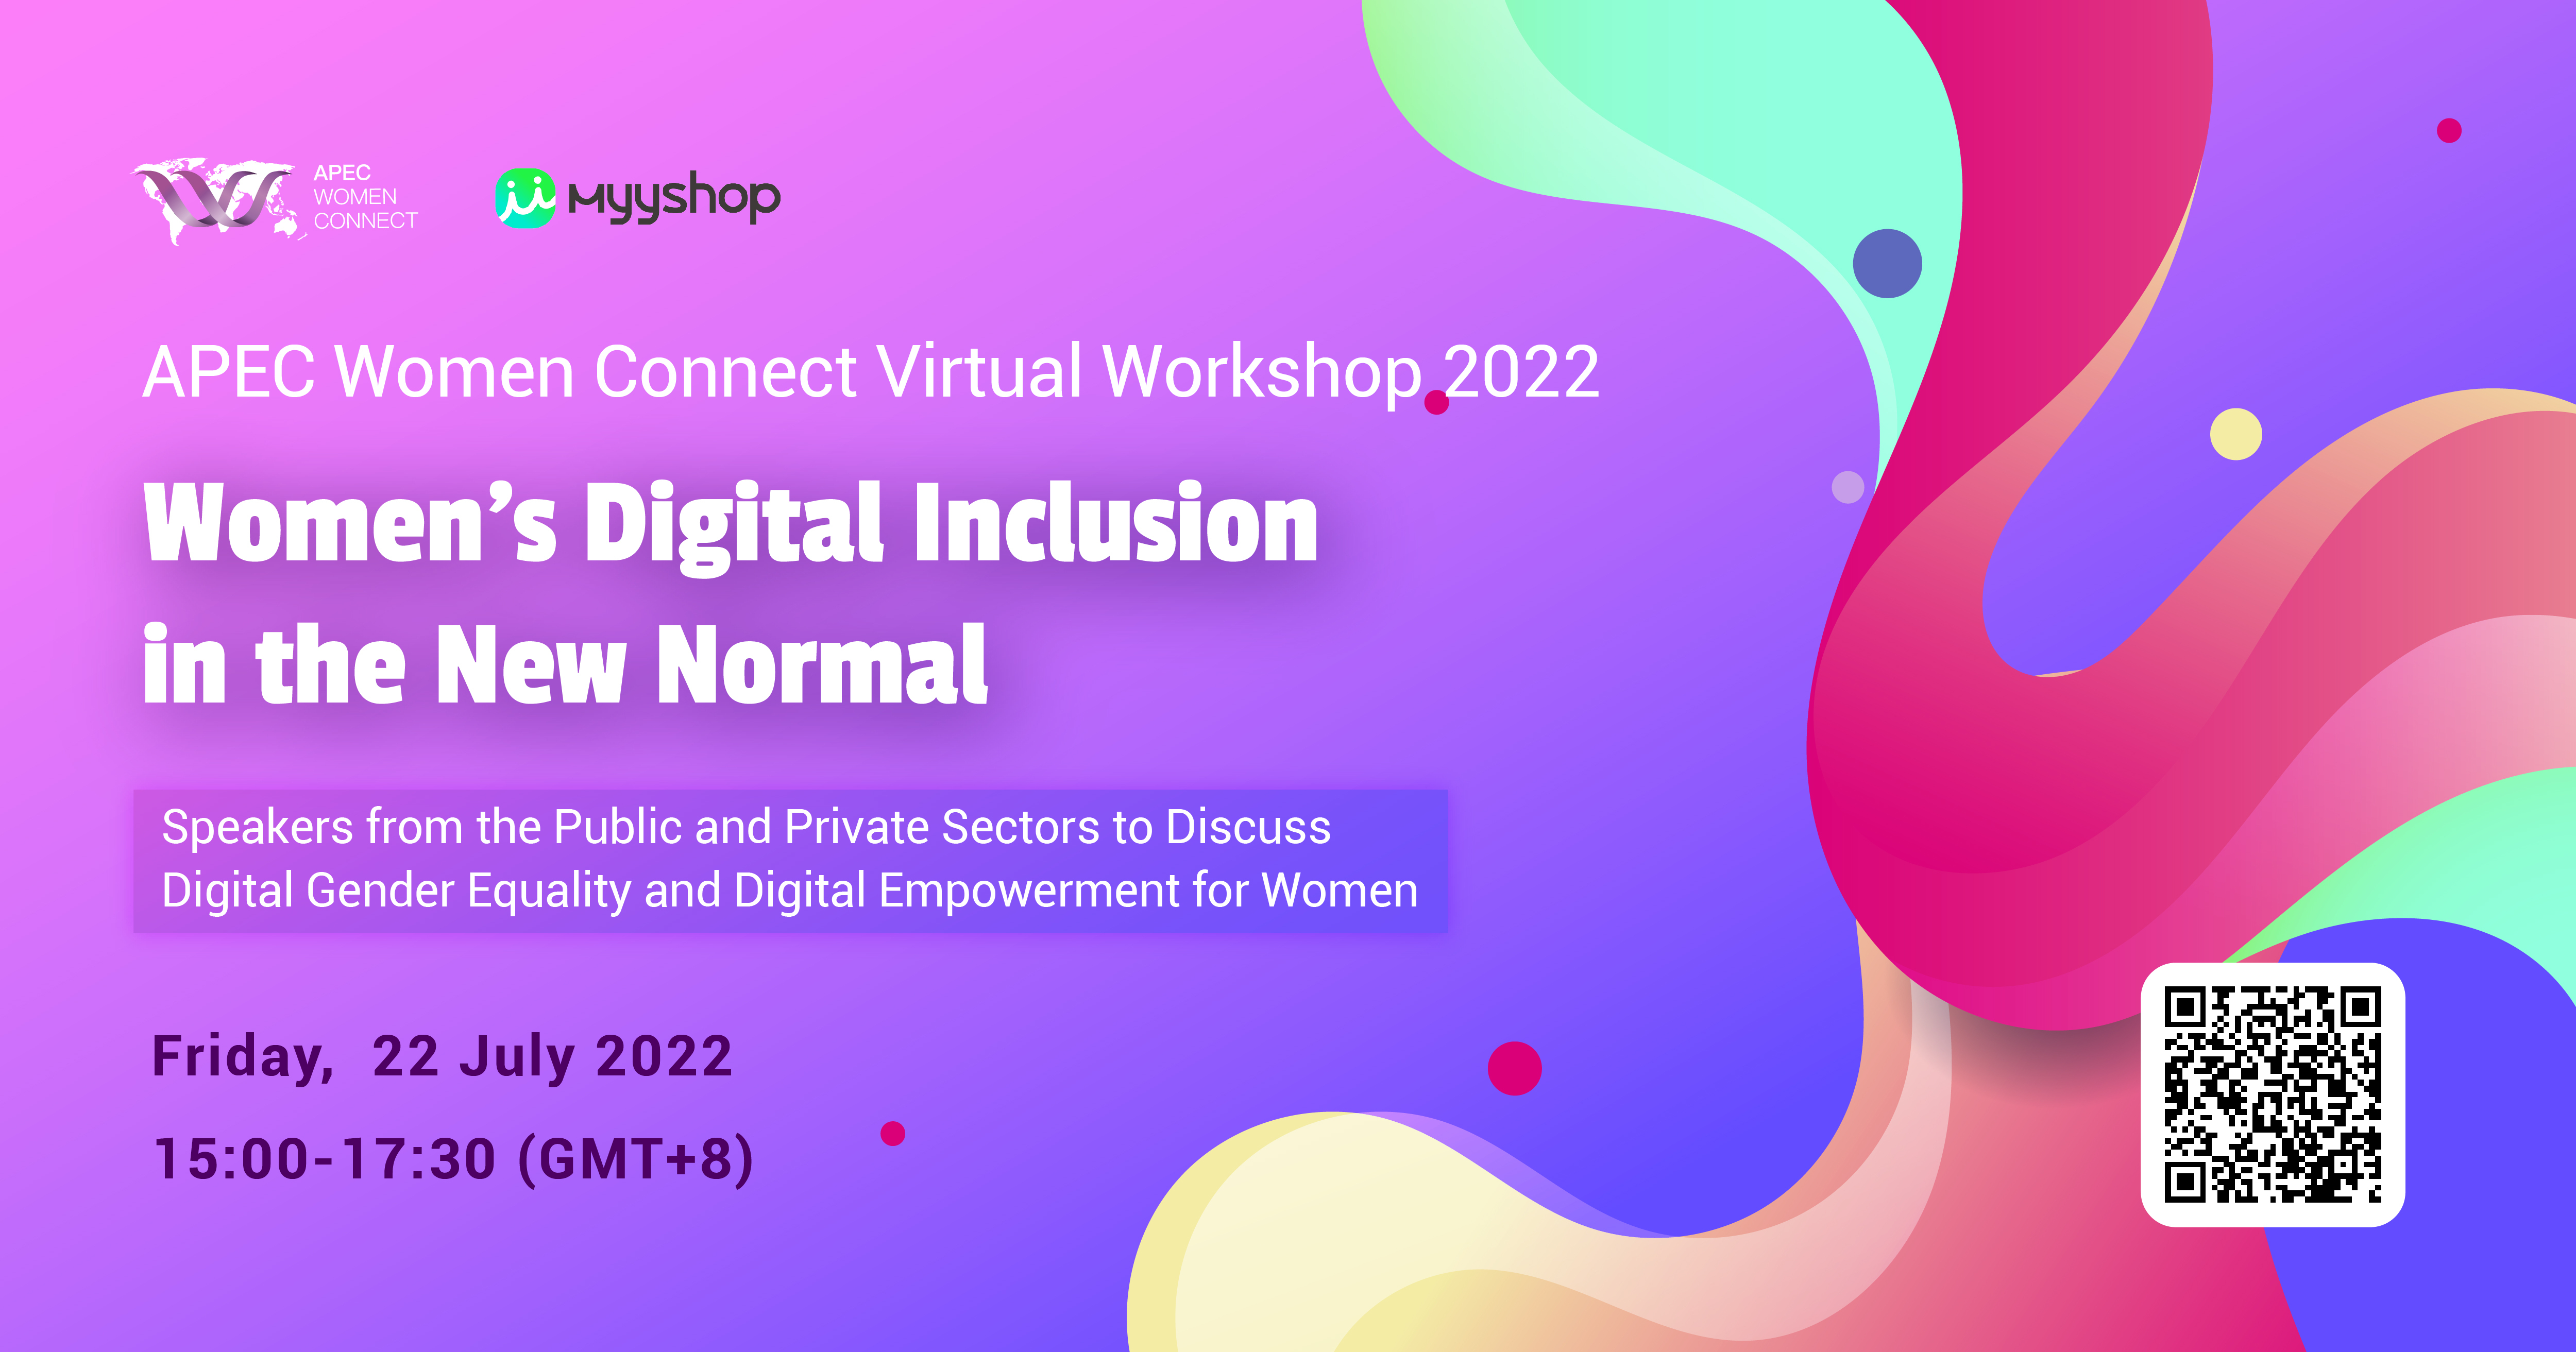 Register Now for APEC Women Connect Virtual Workshop 2022